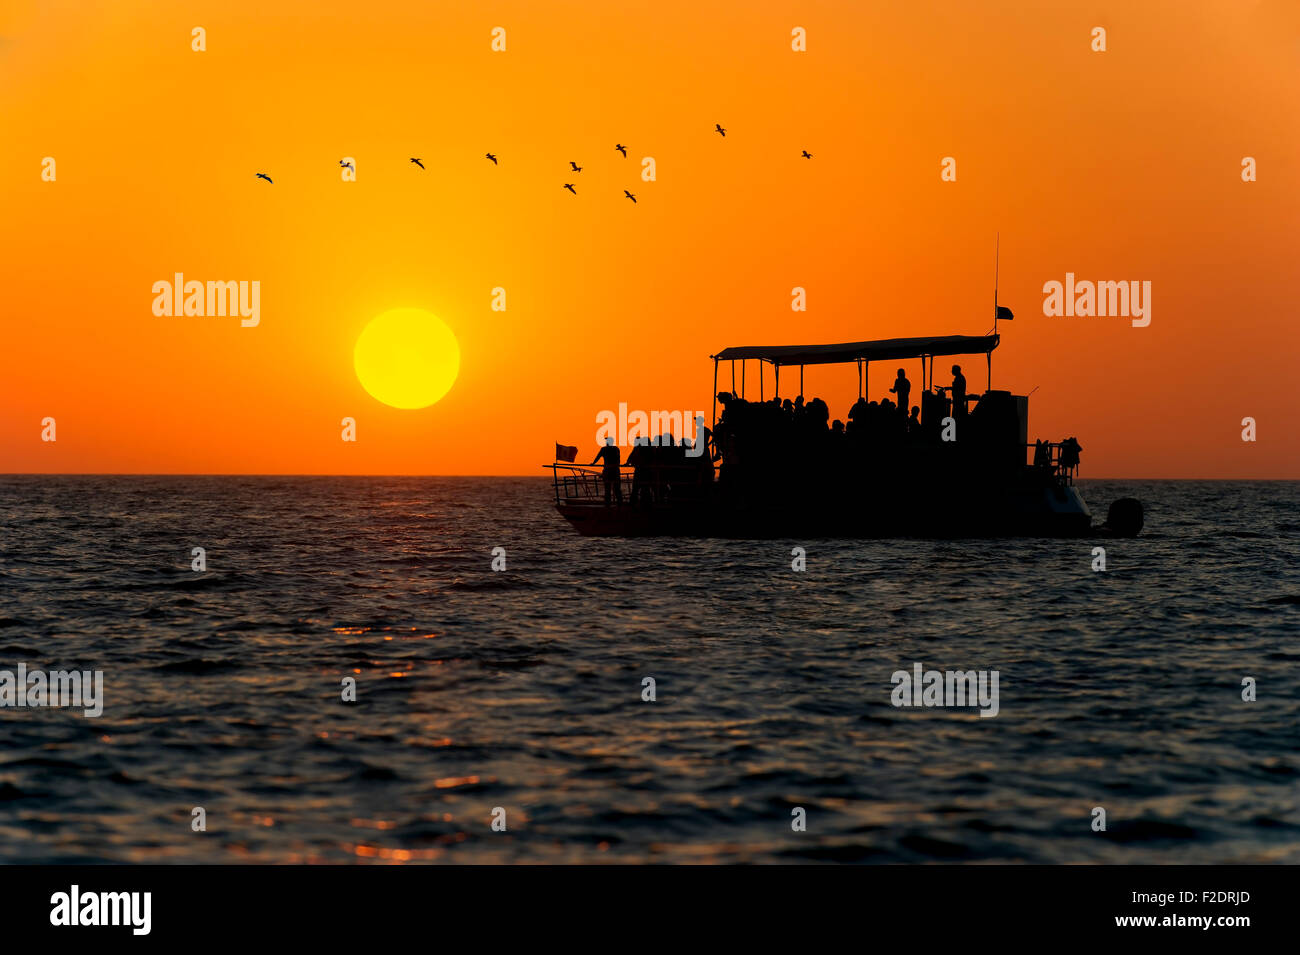 Imbarcazione Persone silhouette è una barca piena di passeggeri mentre uno stormo di uccelli vola in testa ed il sole tramonta sull'oceano orizzonte Foto Stock